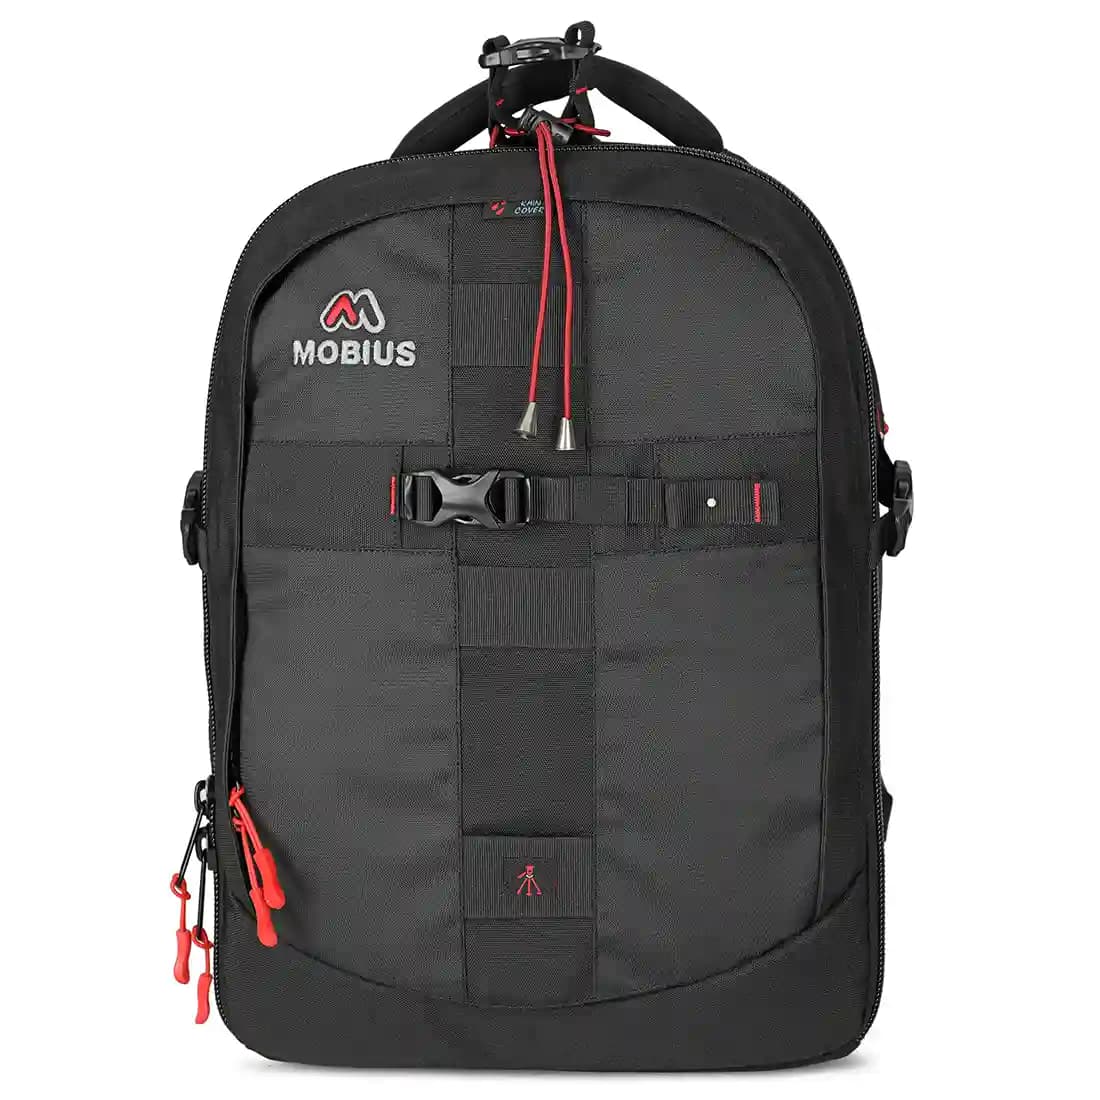 Mobius Trendsetter Pro 100% Waterproof DSLR Camera Bag